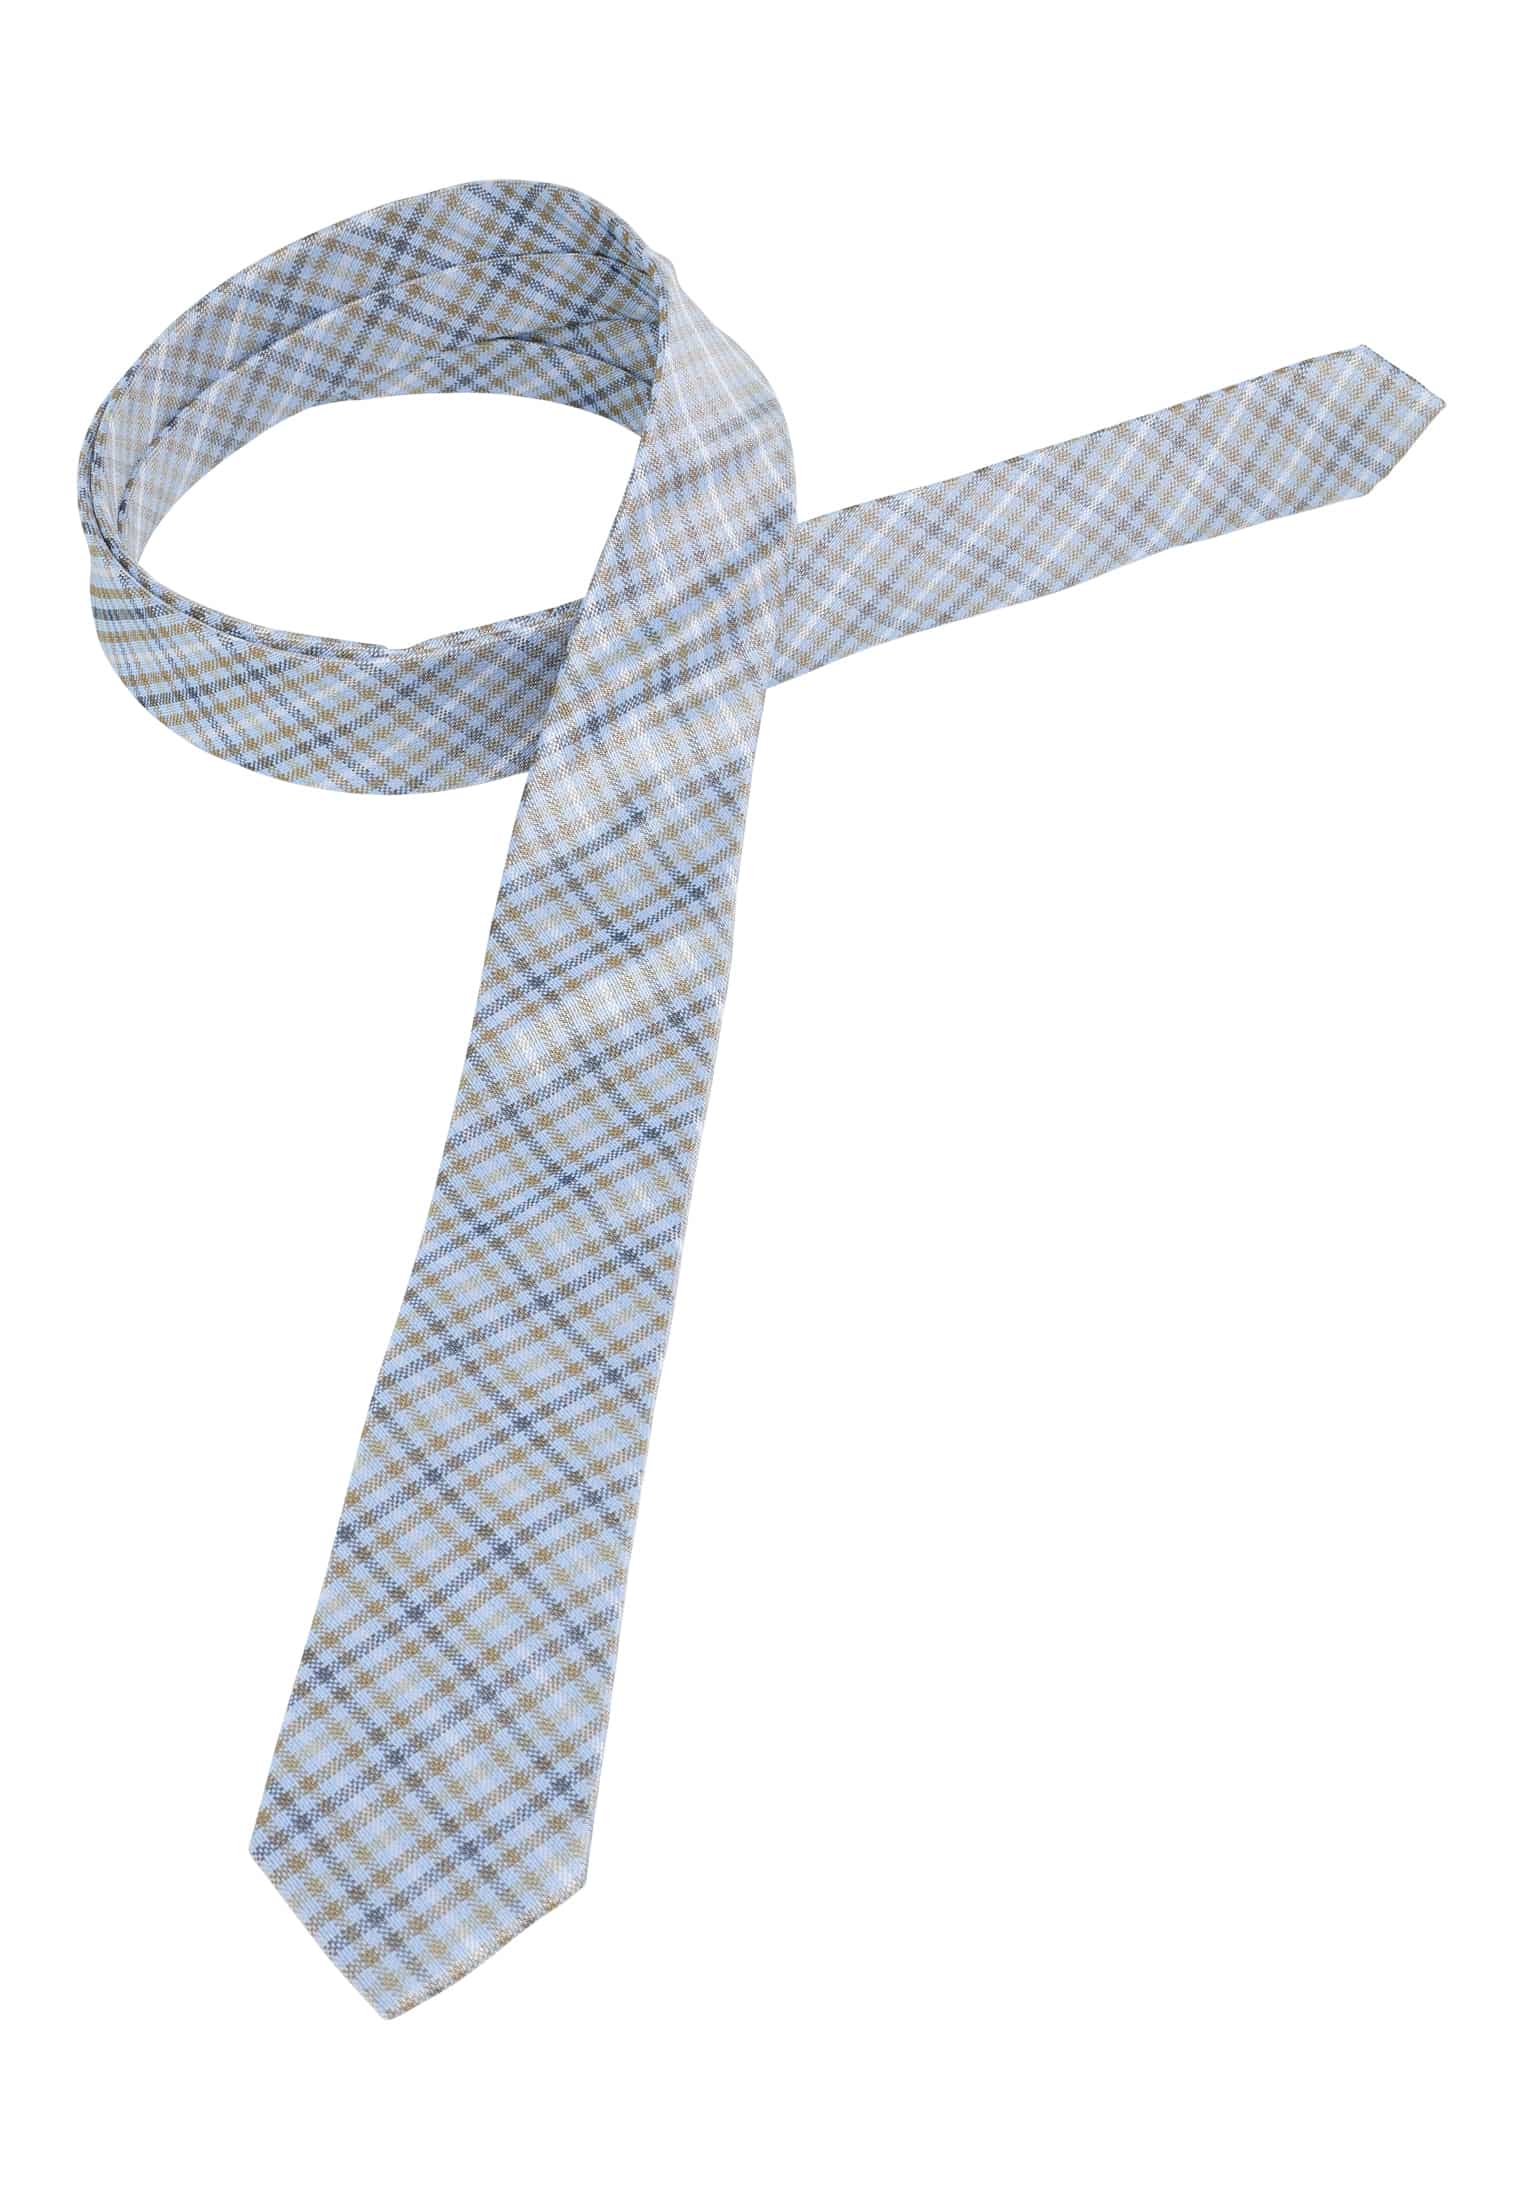 | | in | 142 kariert Krawatte blau/grün 1AC01998-81-48-142 blau/grün